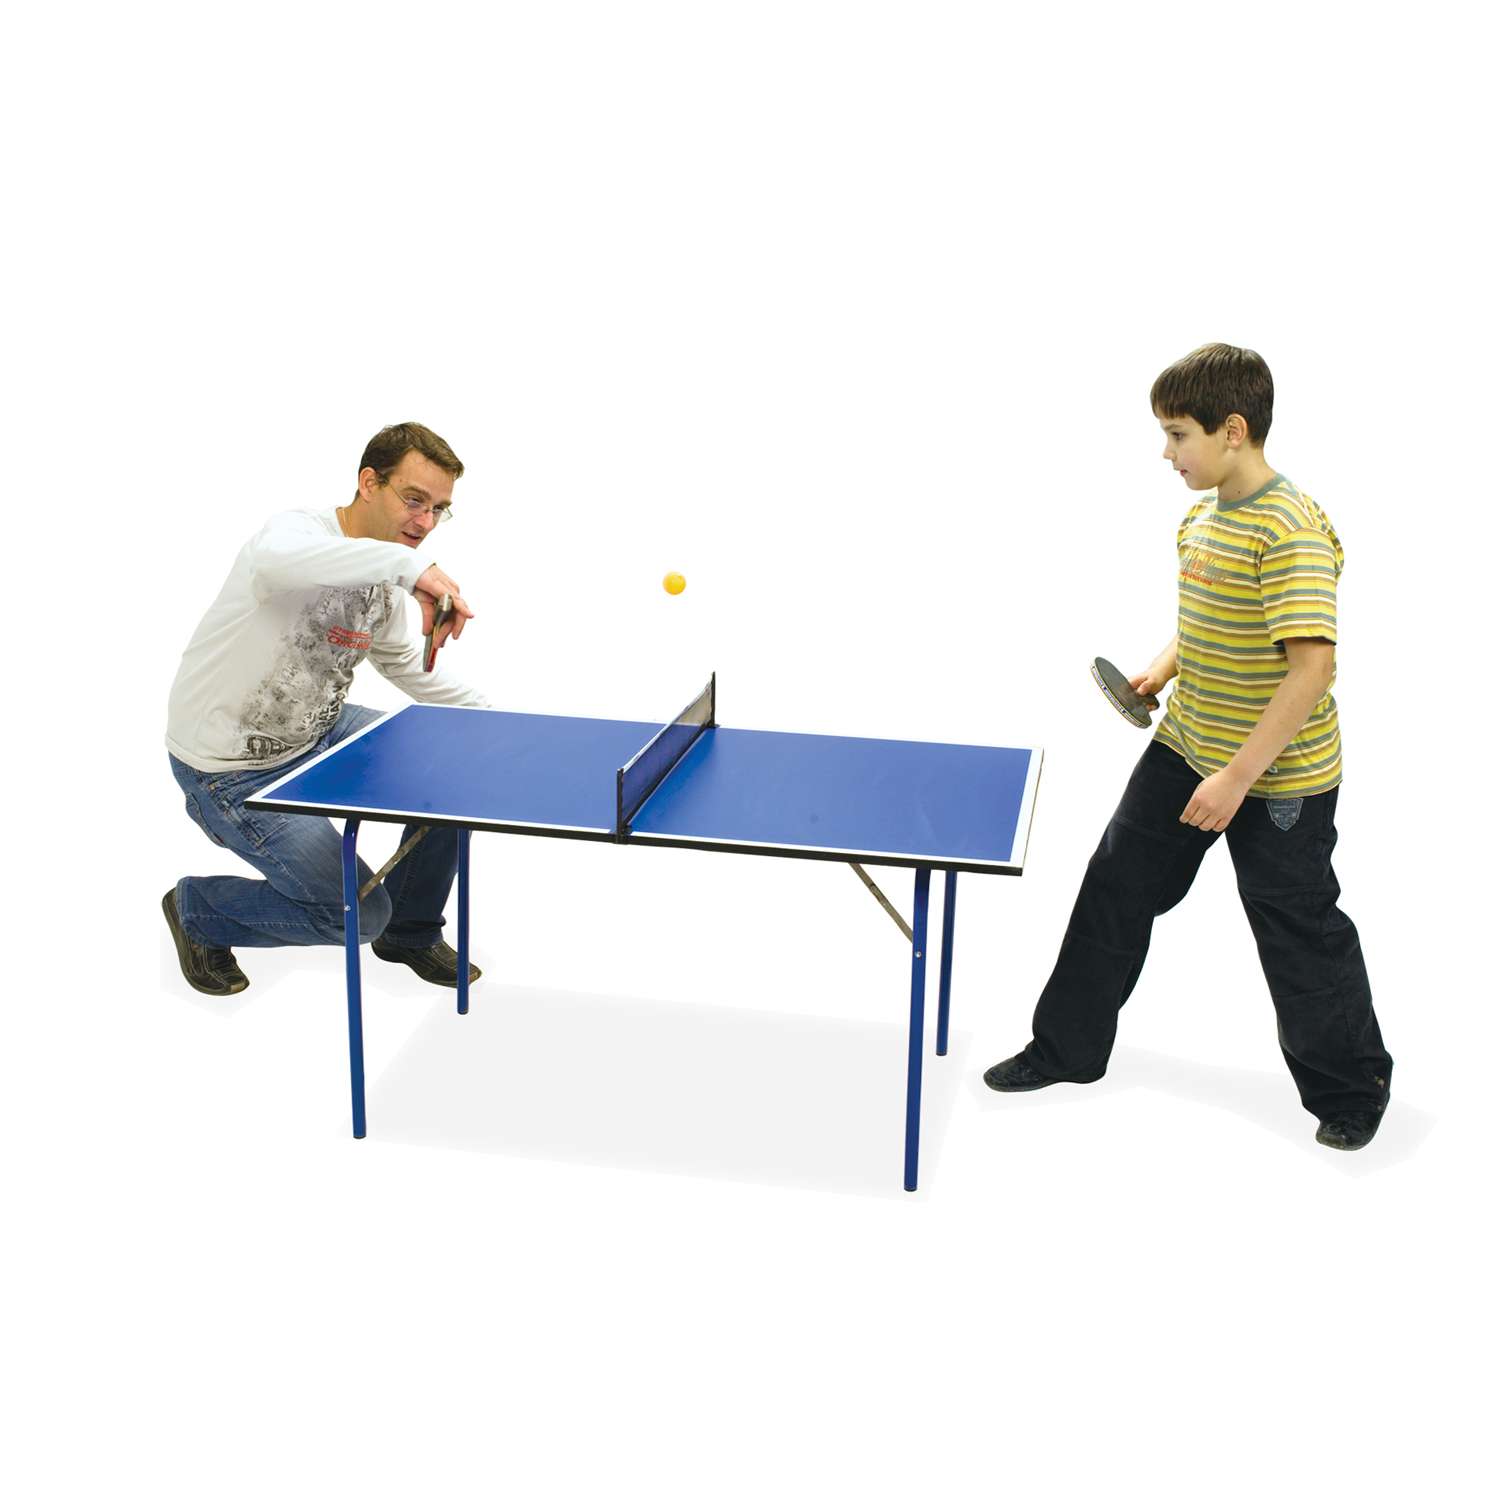 Теннисный стол Start Line Junior синий - фото 2